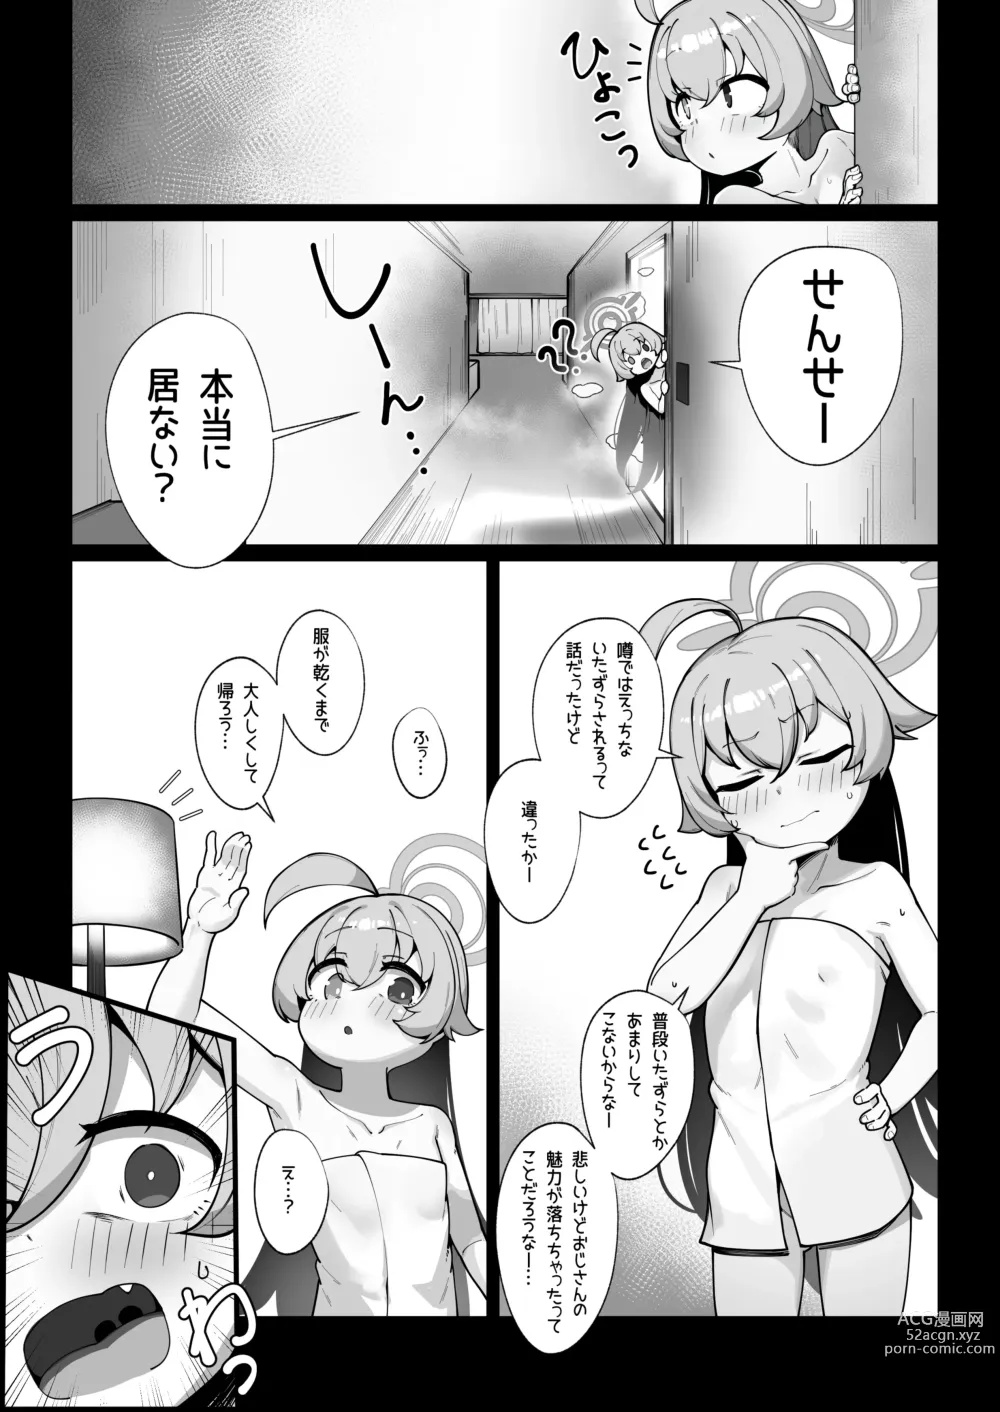 Page 4 of doujinshi Kujira wa Chiisana Shiawase wo Yumemiru (uncensored)